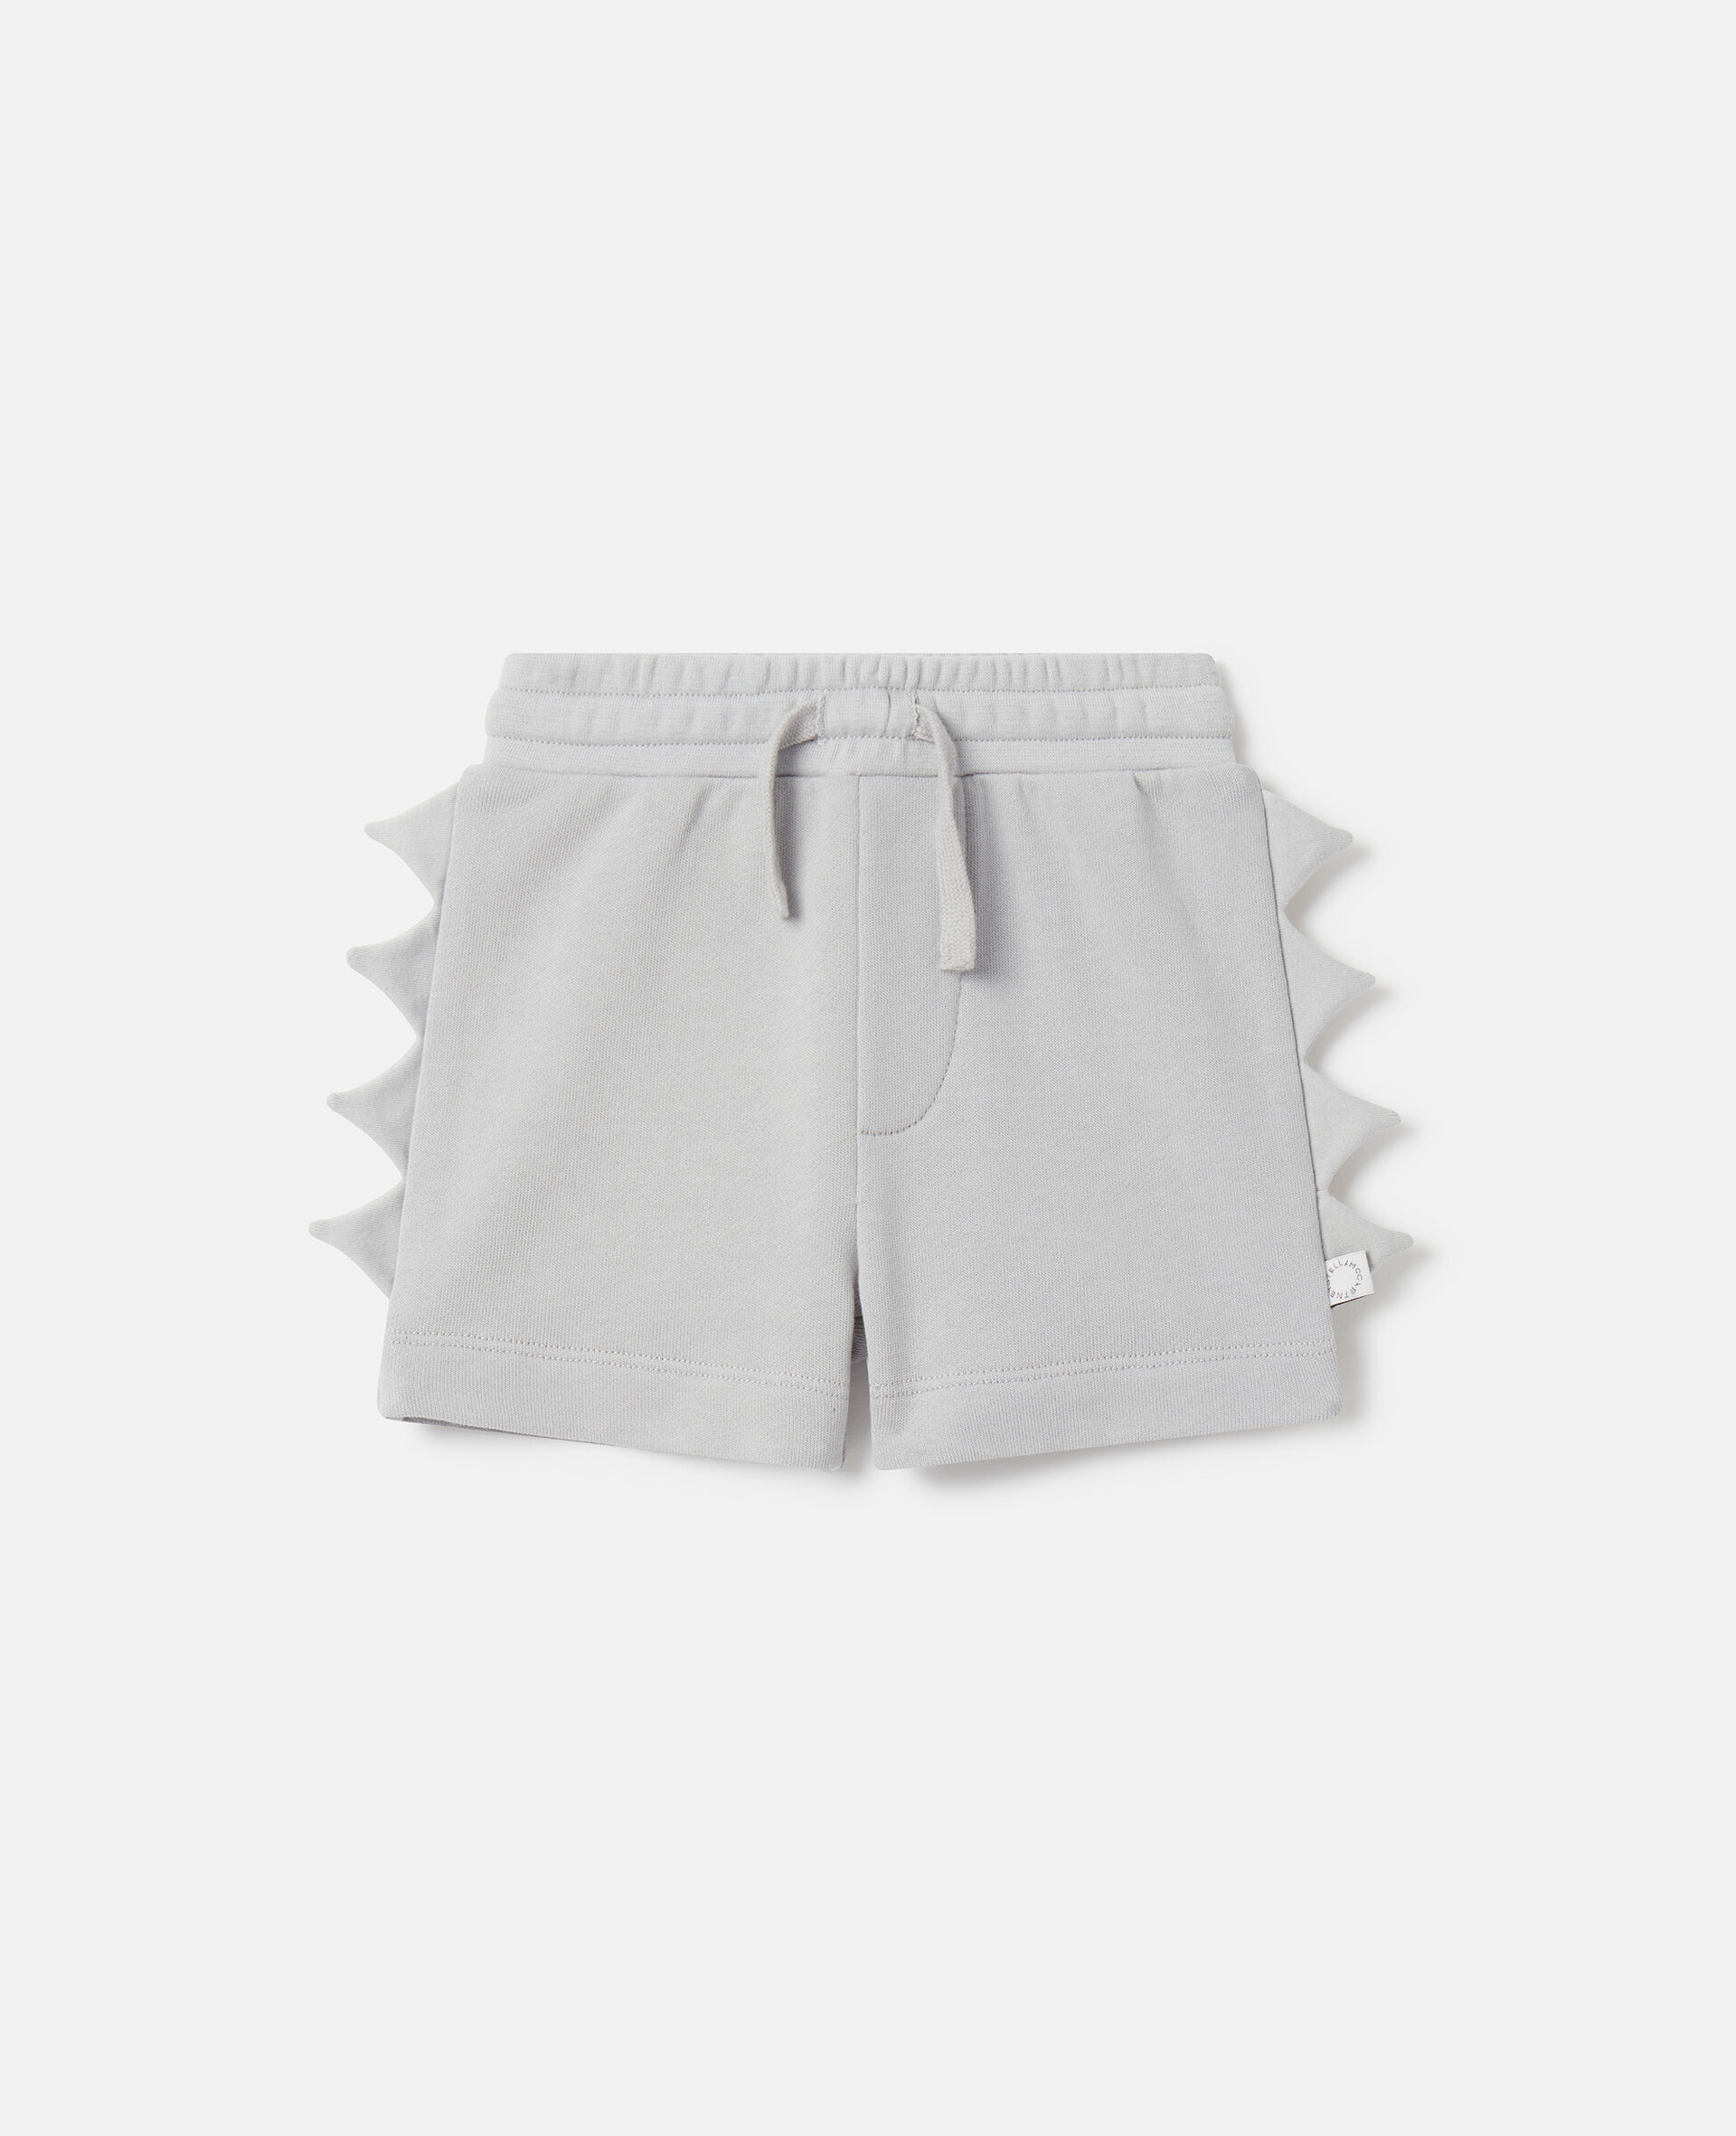 Shark Fin Spike Shorts-Grey-medium